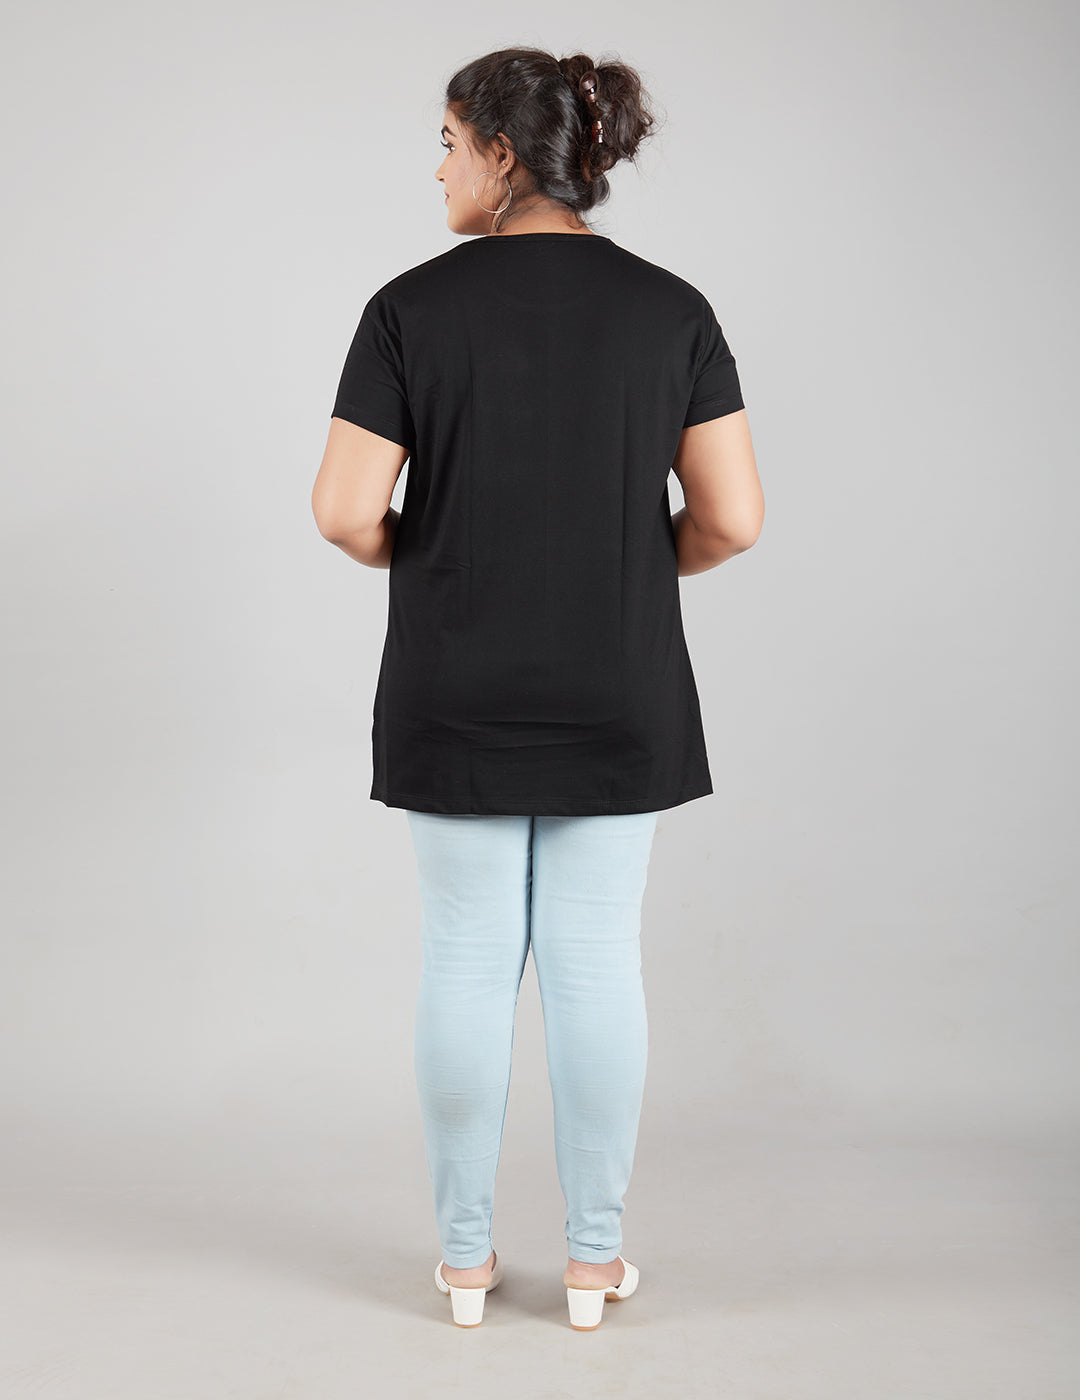 Plus Size Plain Cotton T-Shirt For Women - Black At Online